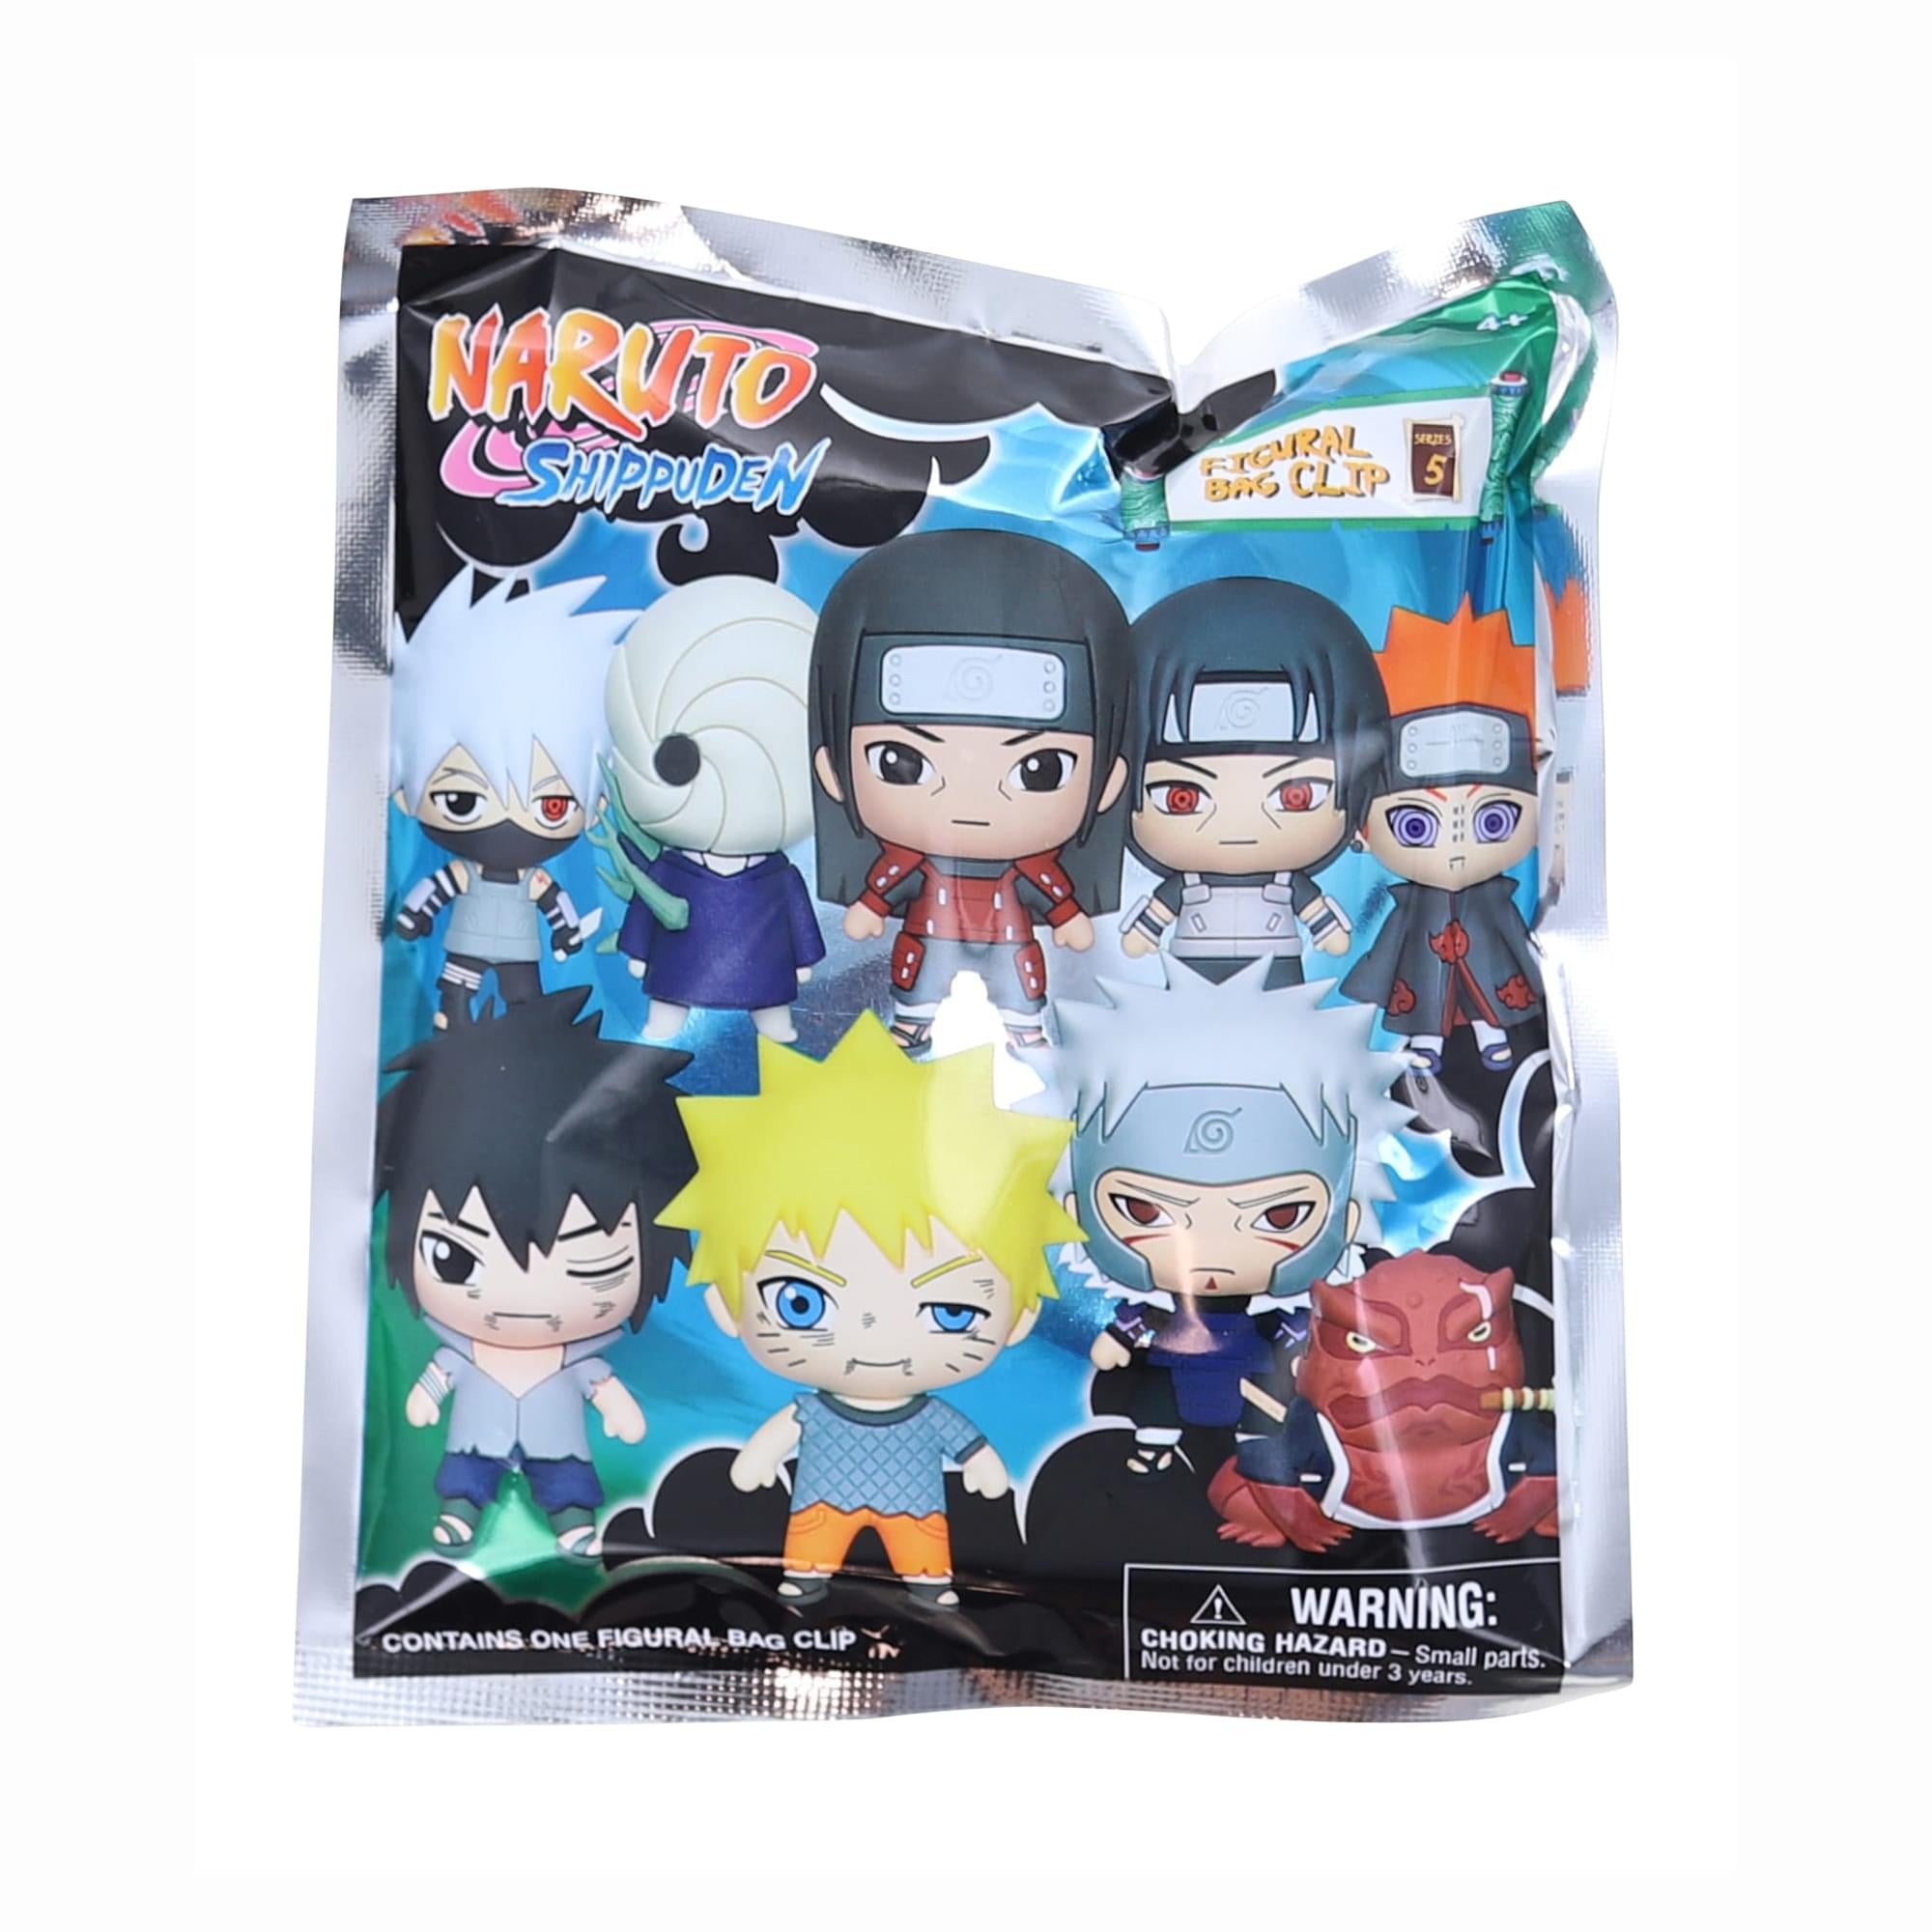 Naruto Series 5 3D Foam Bag Clip , 1 Random